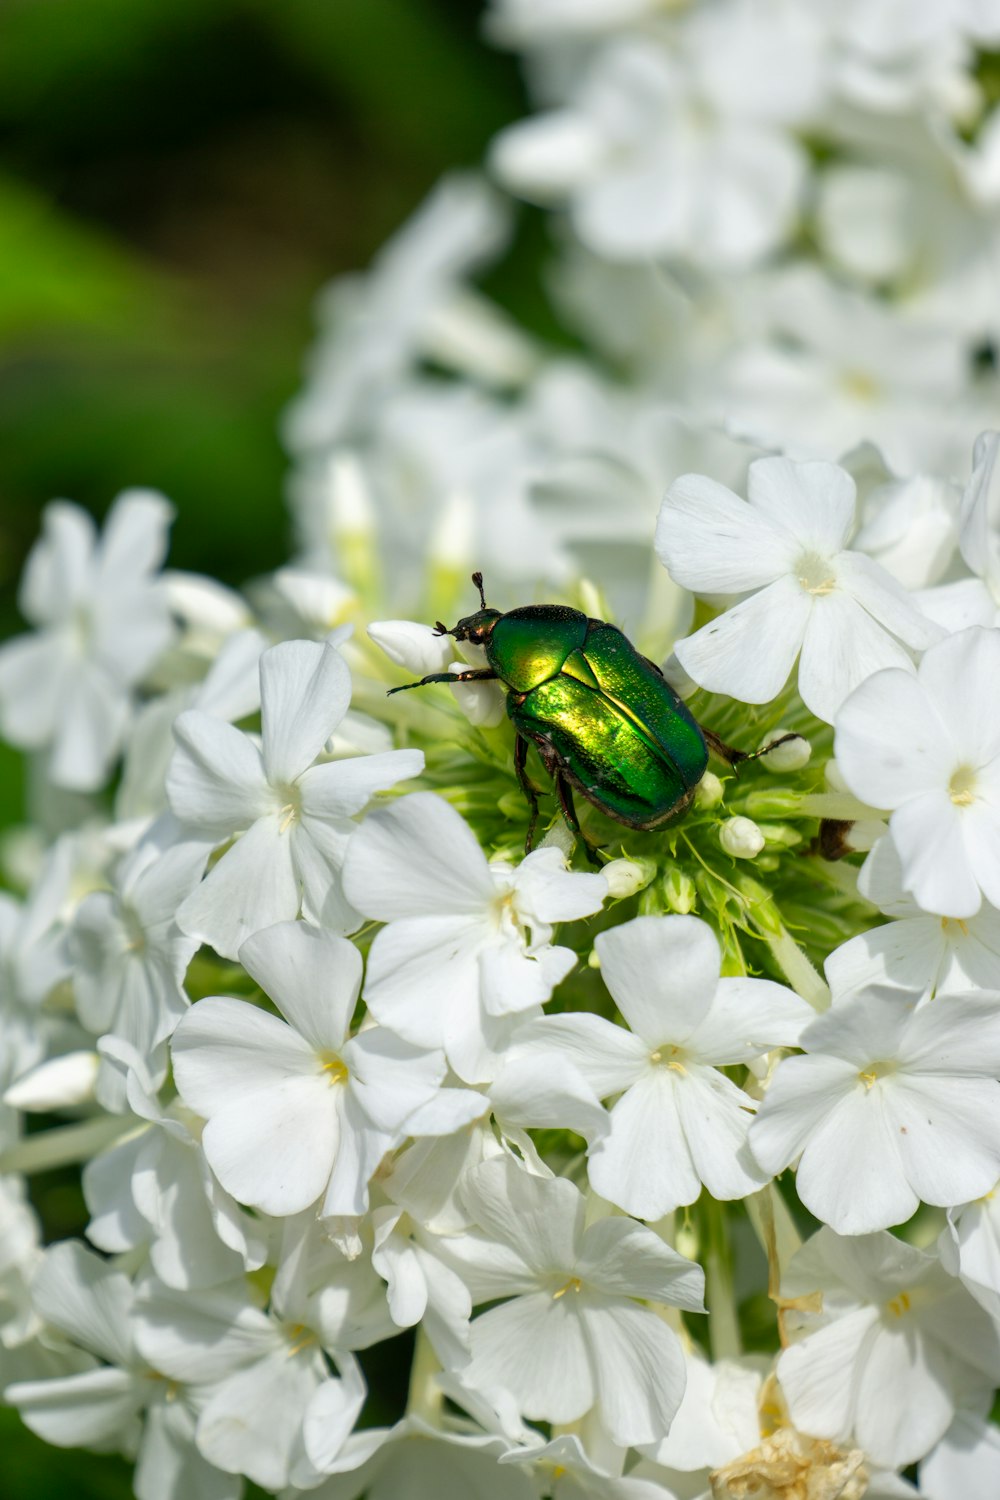 Un insecto verde sentado encima de una flor blanca